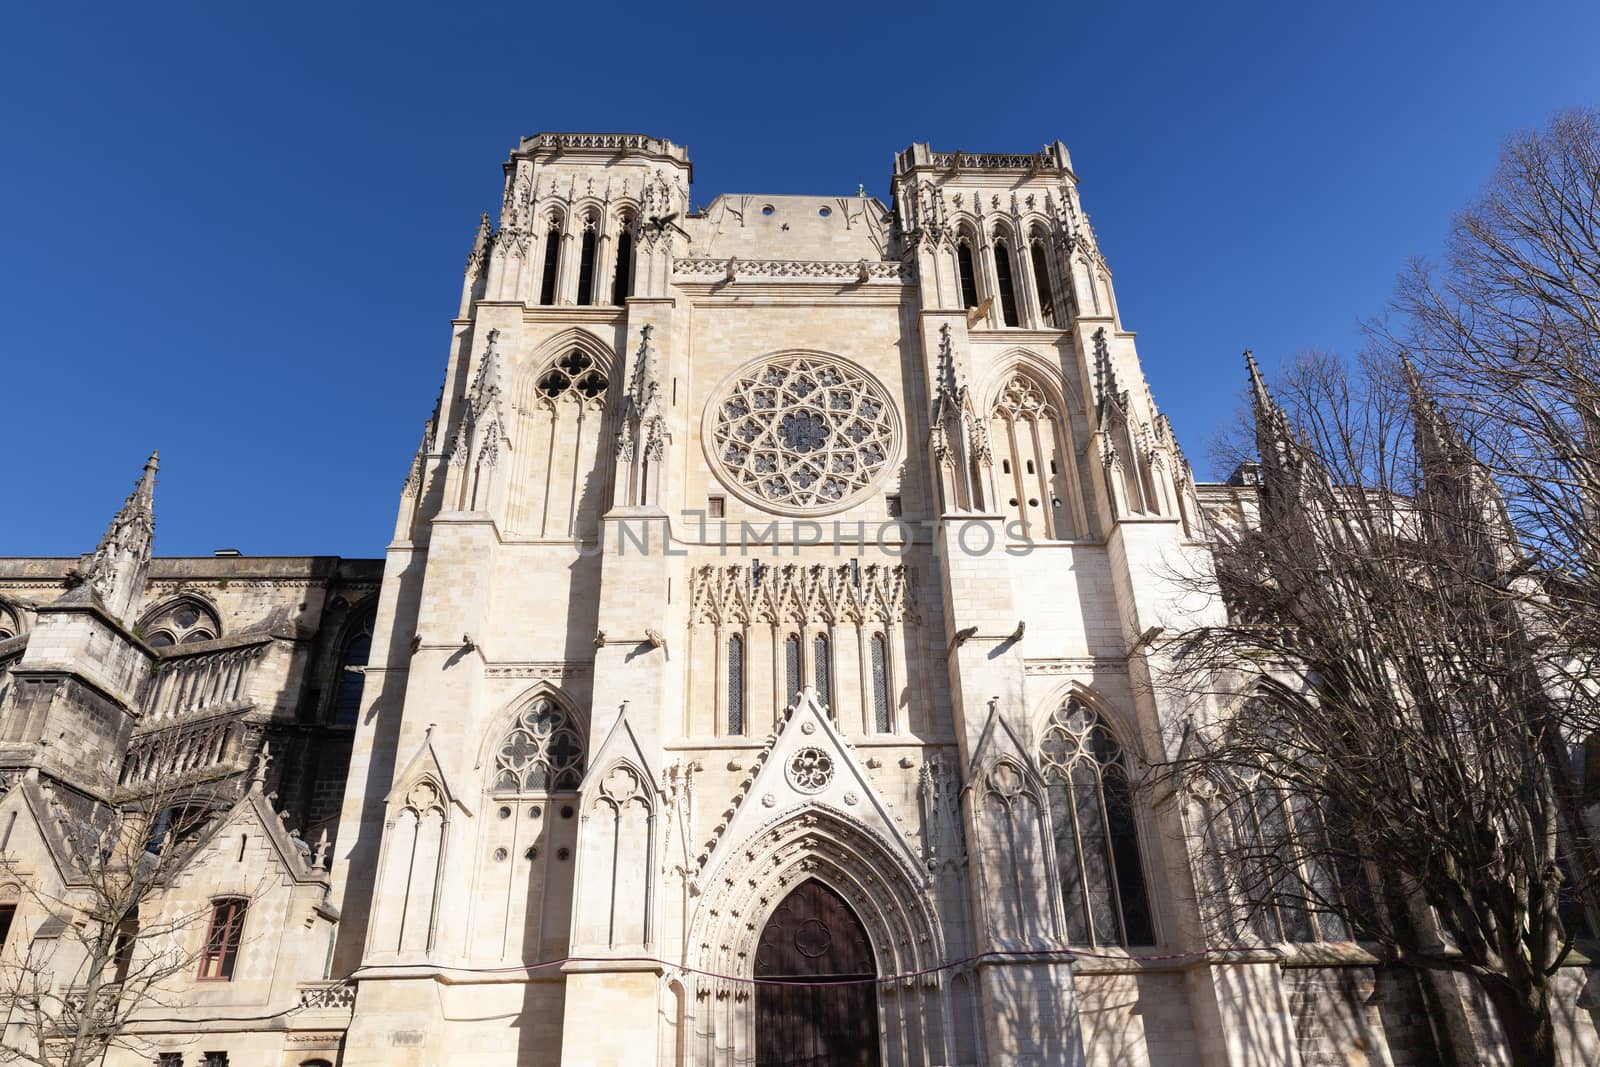 Bordeaux Cathedral Saint-Andre, Bordeaux, France by vlad-m